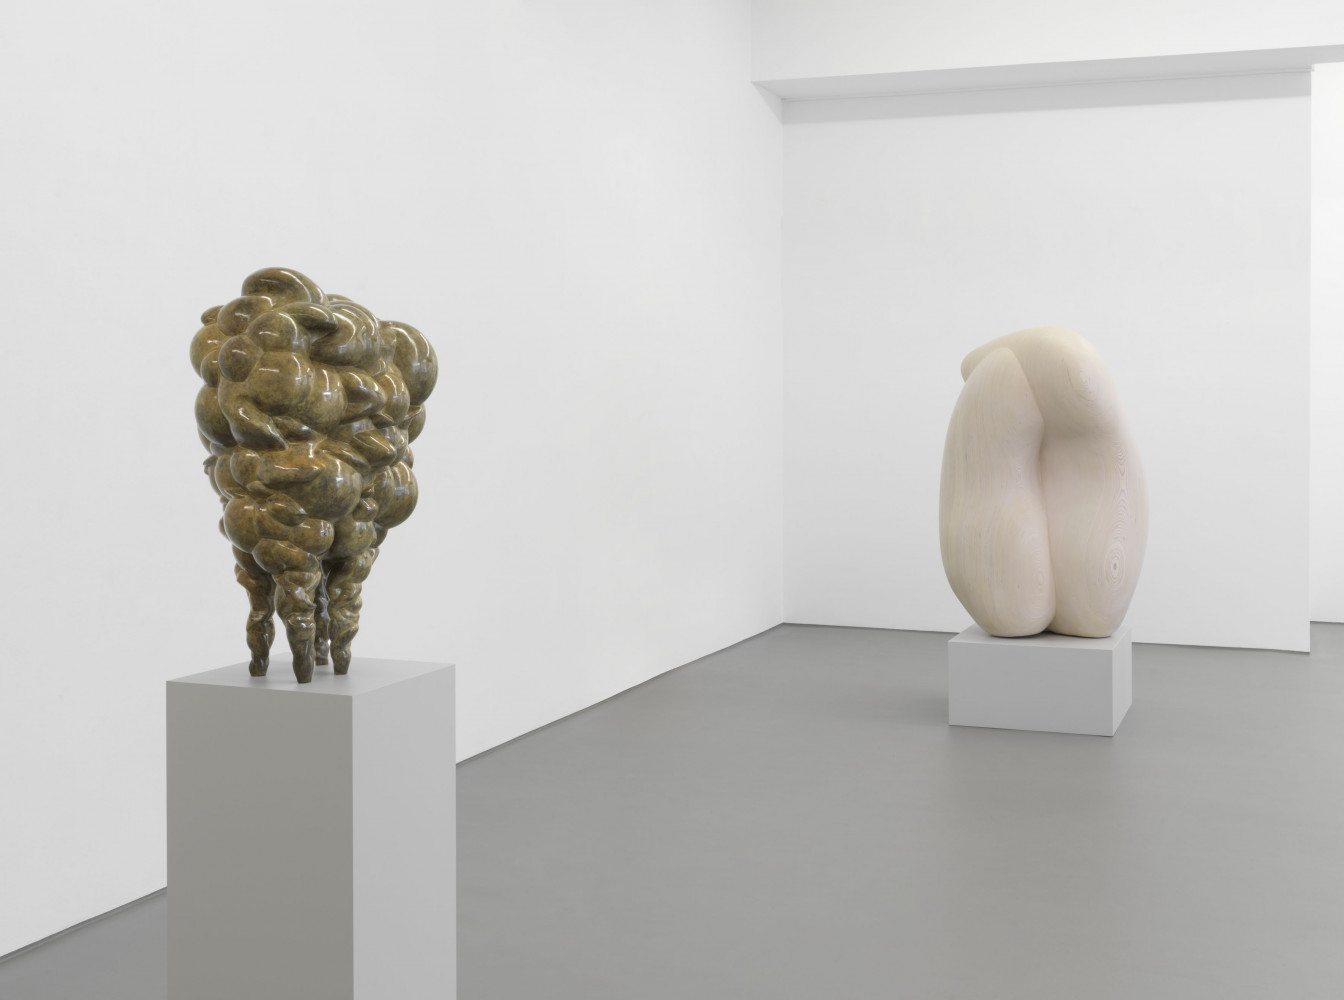 Tony Cragg, ‘Sculptures’, Installation view, Buchmann Galerie, 2021